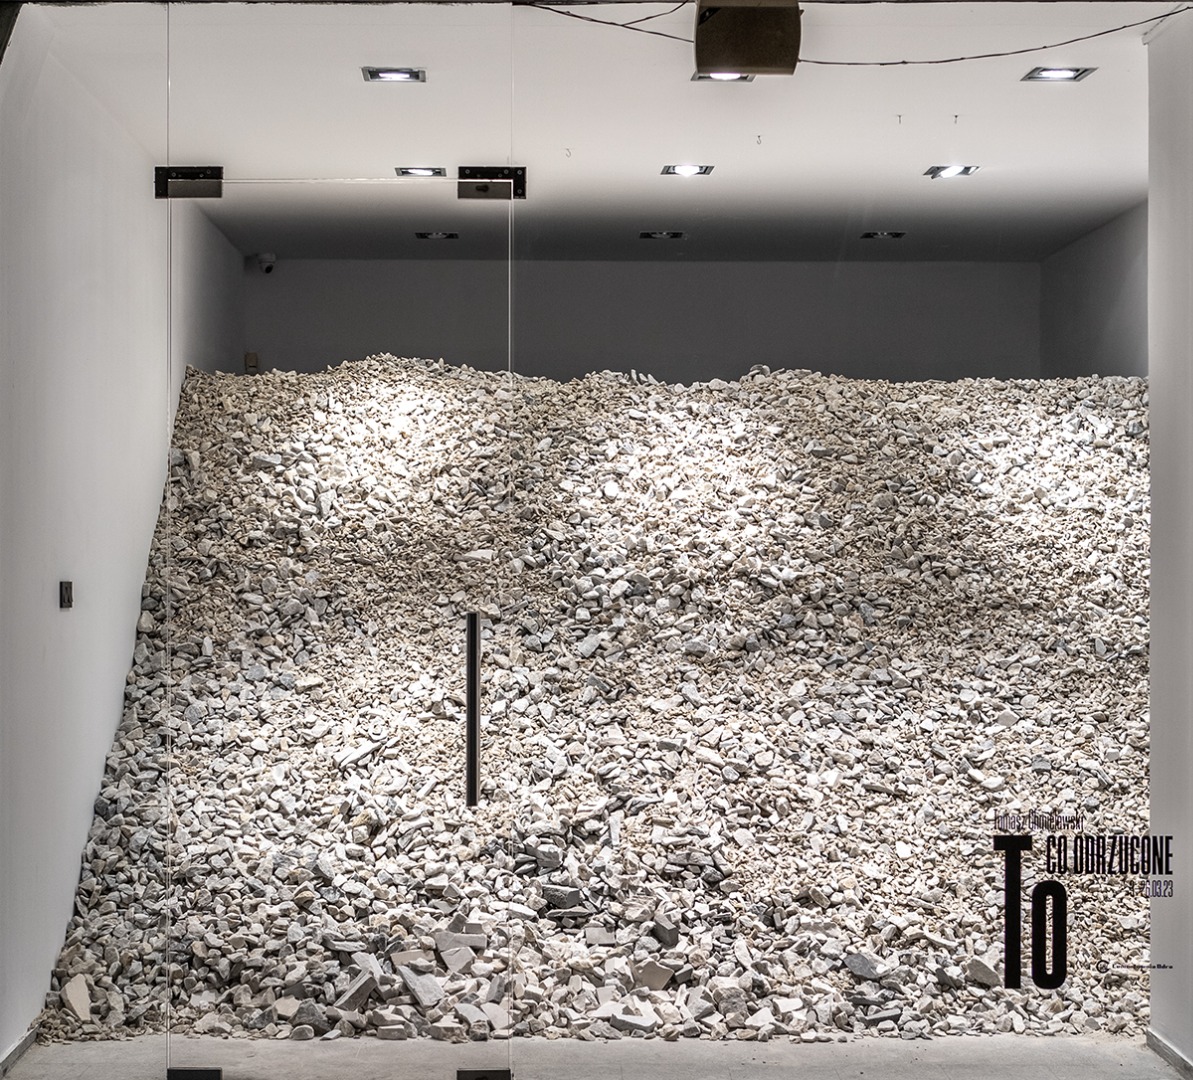 zdjęcie wystawy w galerii Aneks, instalacja składająca się z łupków kamiennych, marmuru. 